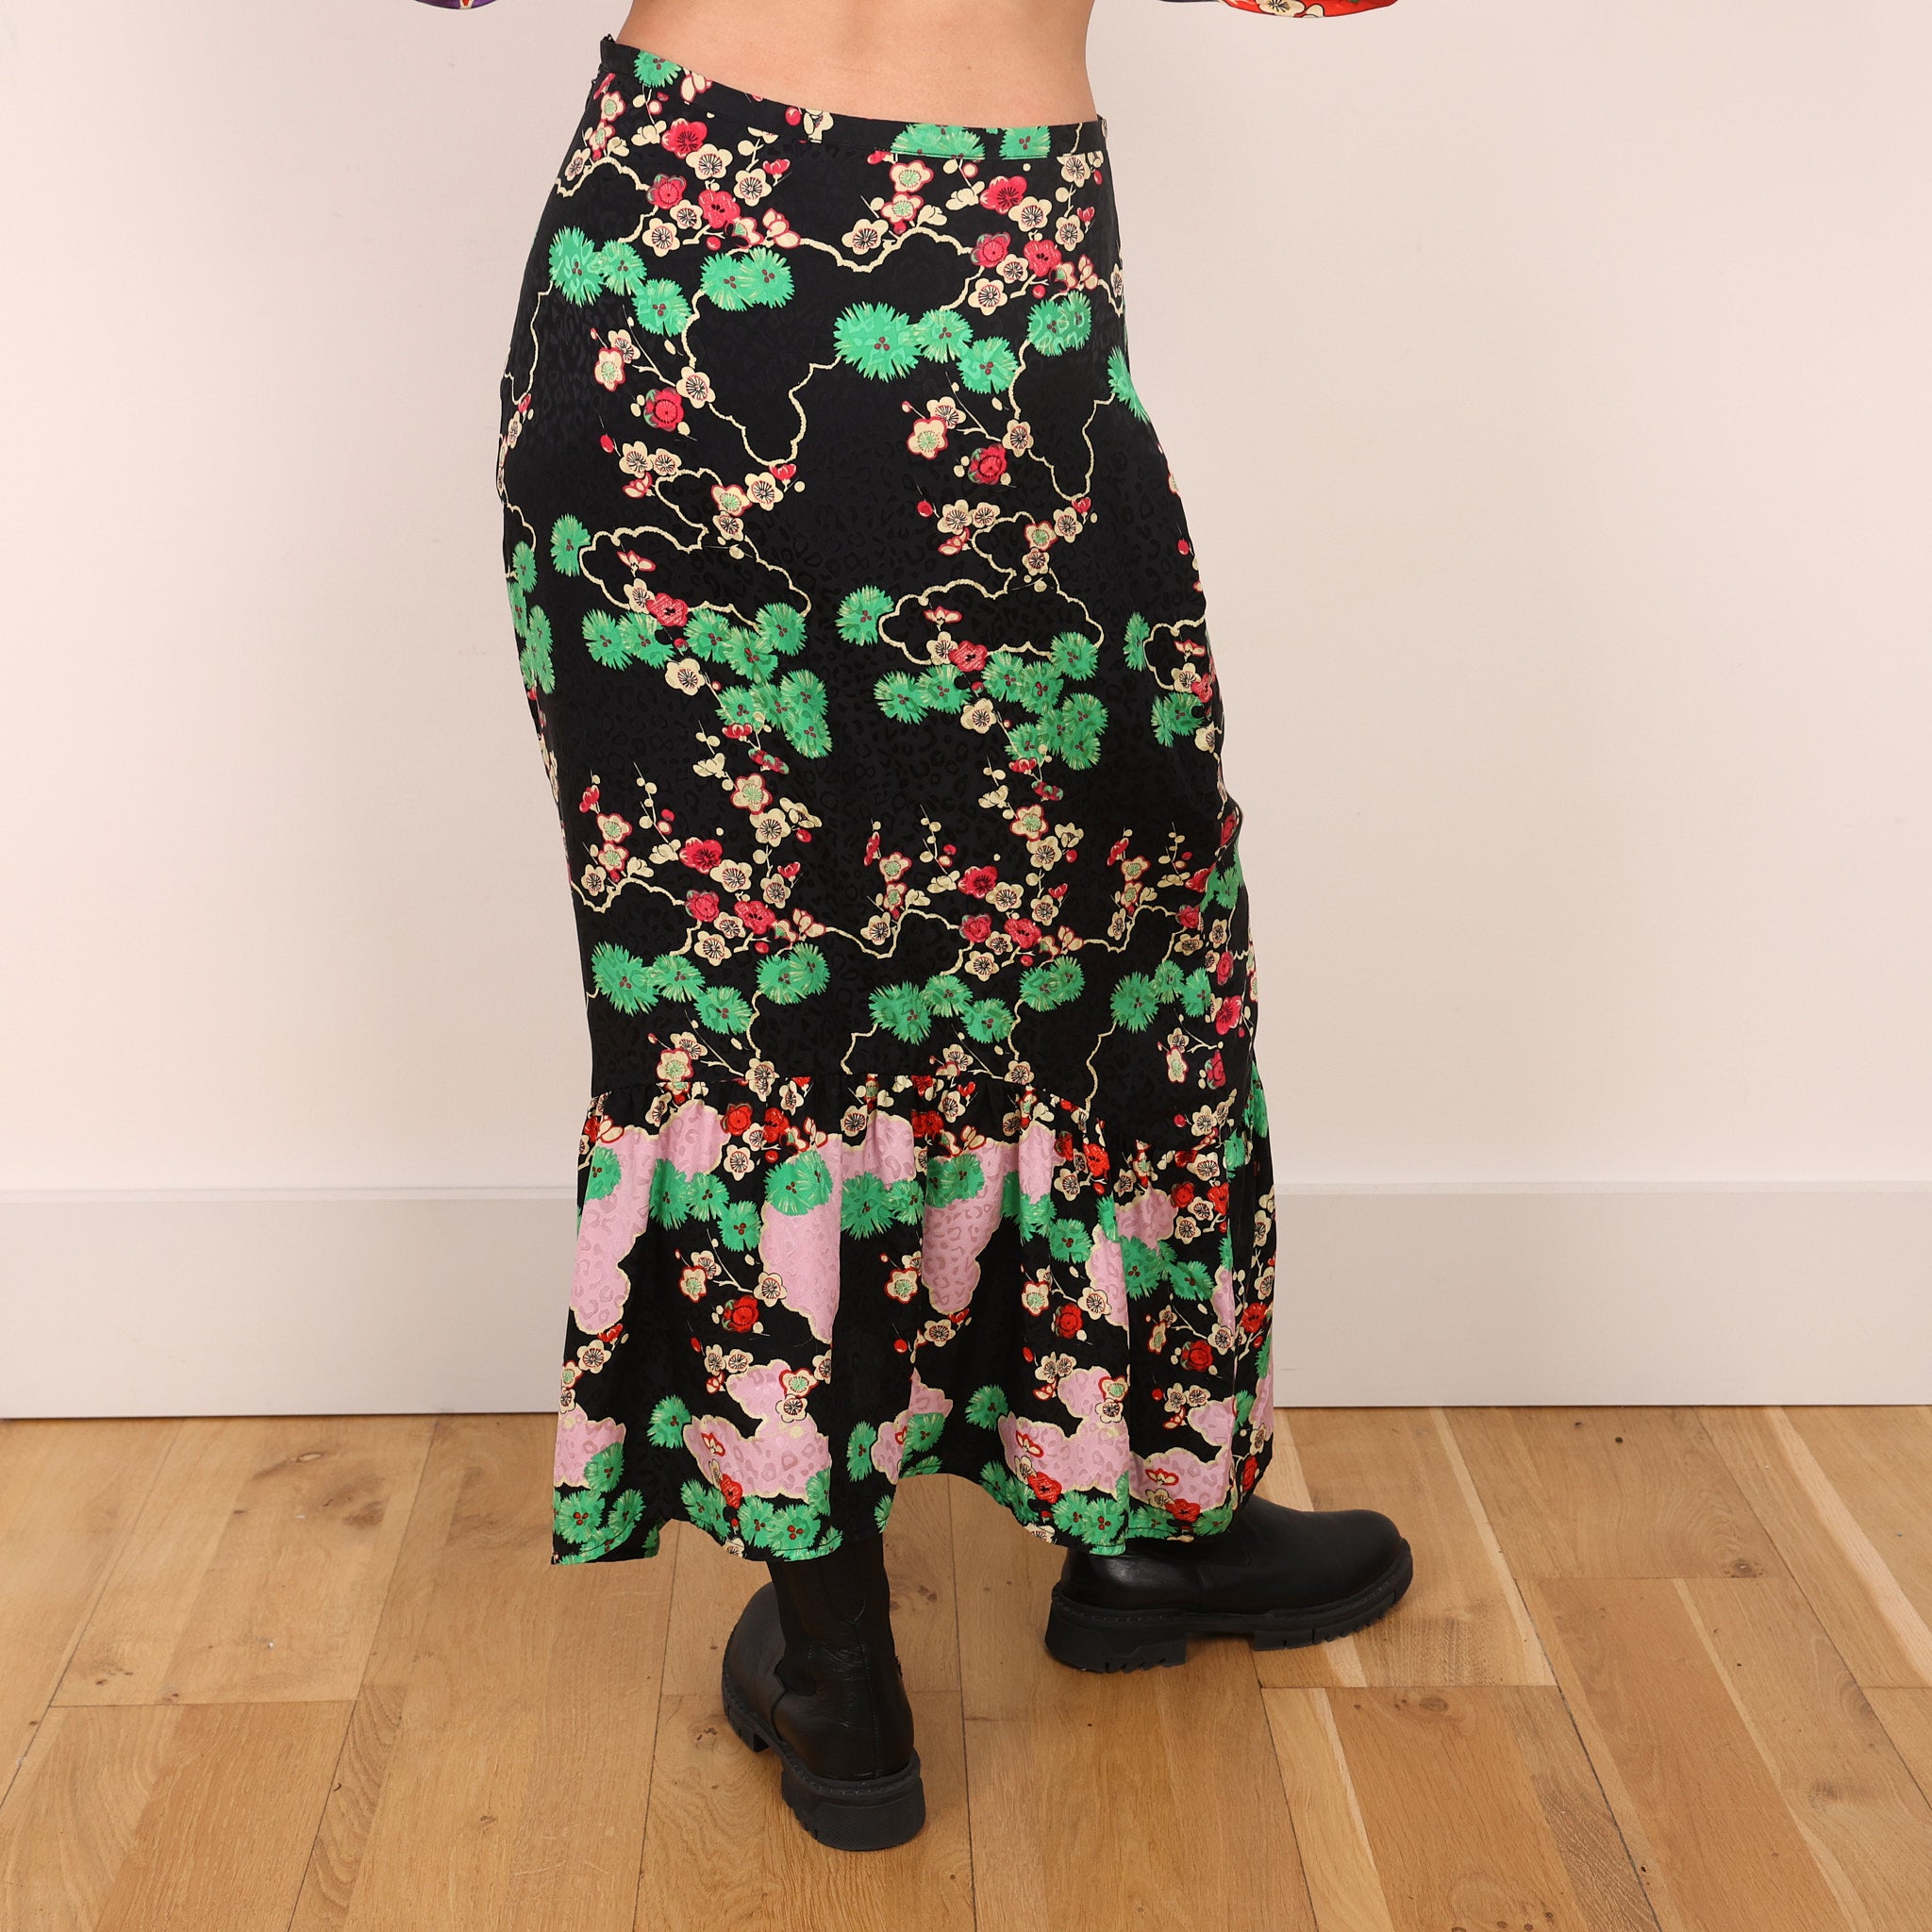 Skirt, UK Size 12